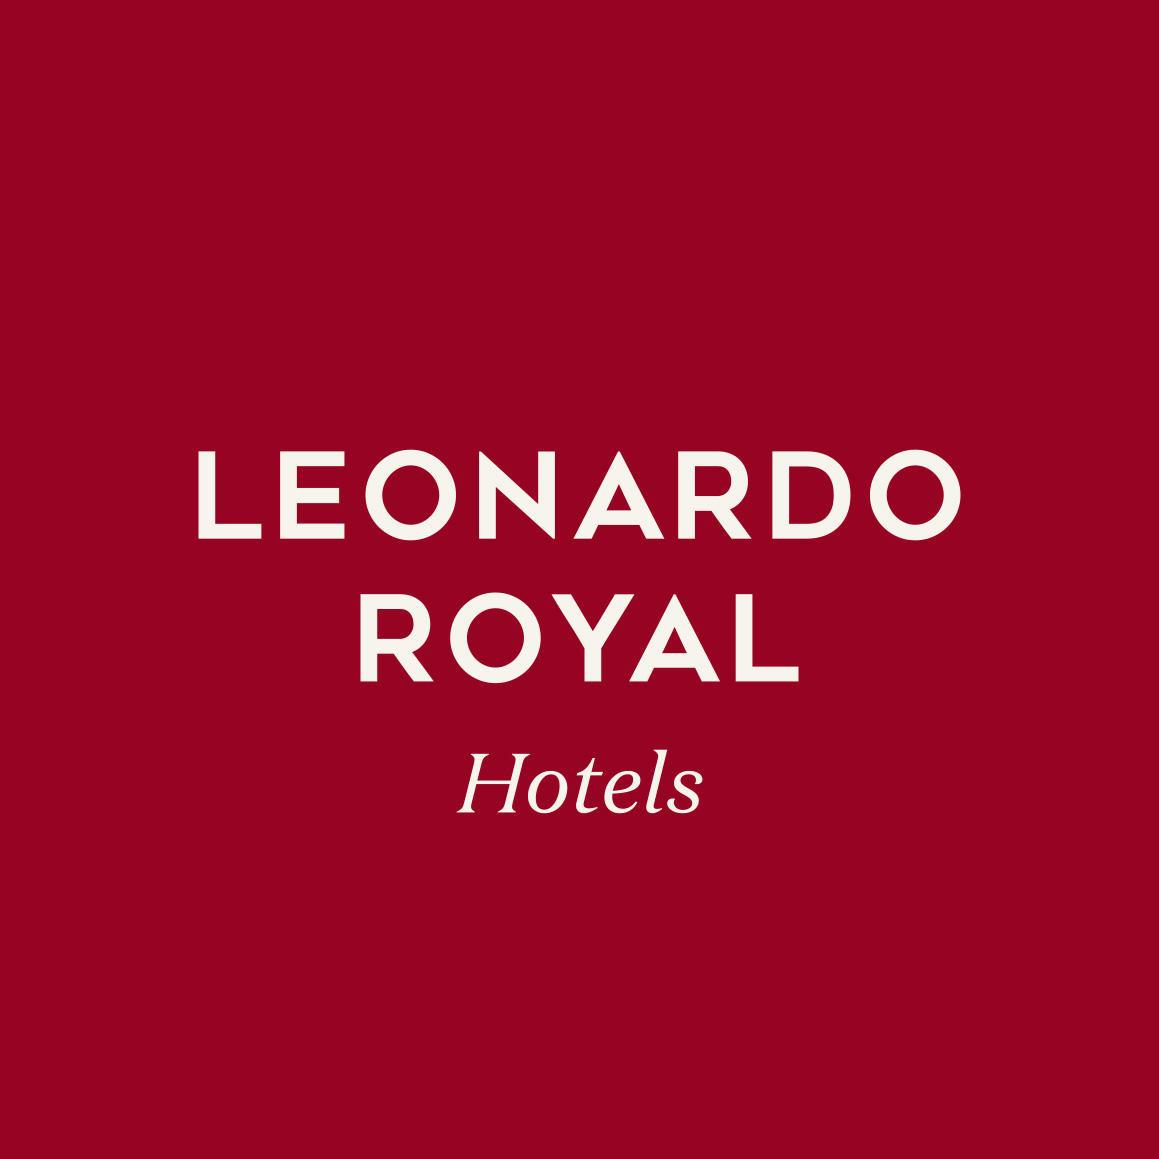 Leonardo Royal Hotel Birmingham - Birmingham, West Midlands B1 2HQ - 01216 069000 | ShowMeLocal.com